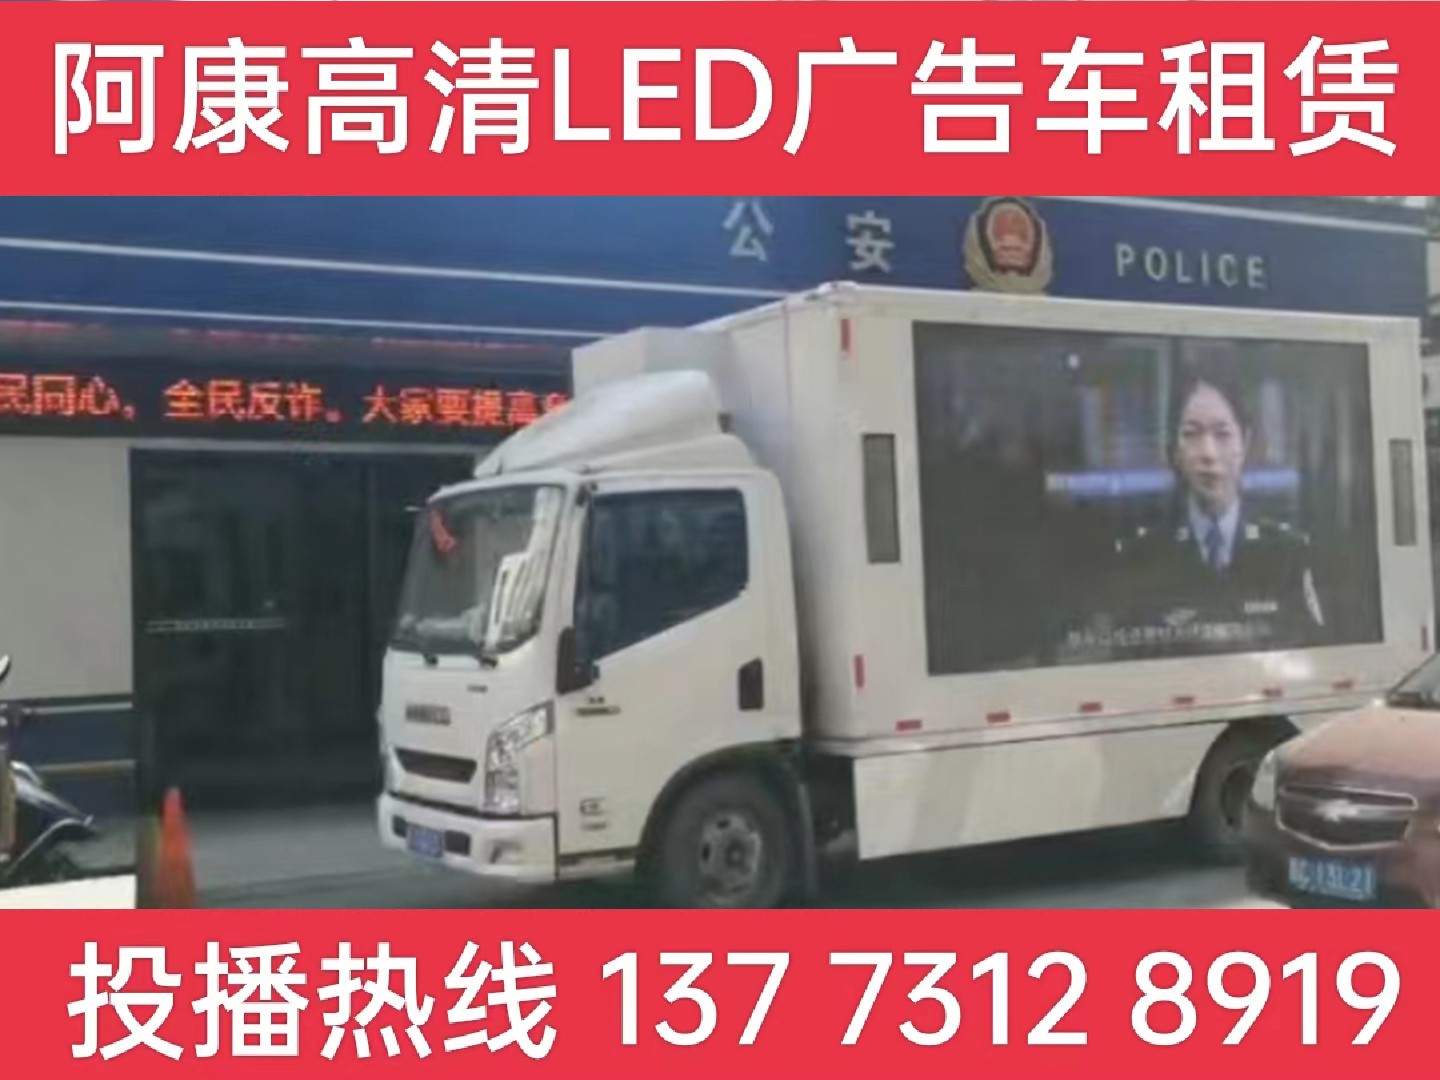 邗江区LED广告车租赁-反诈宣传